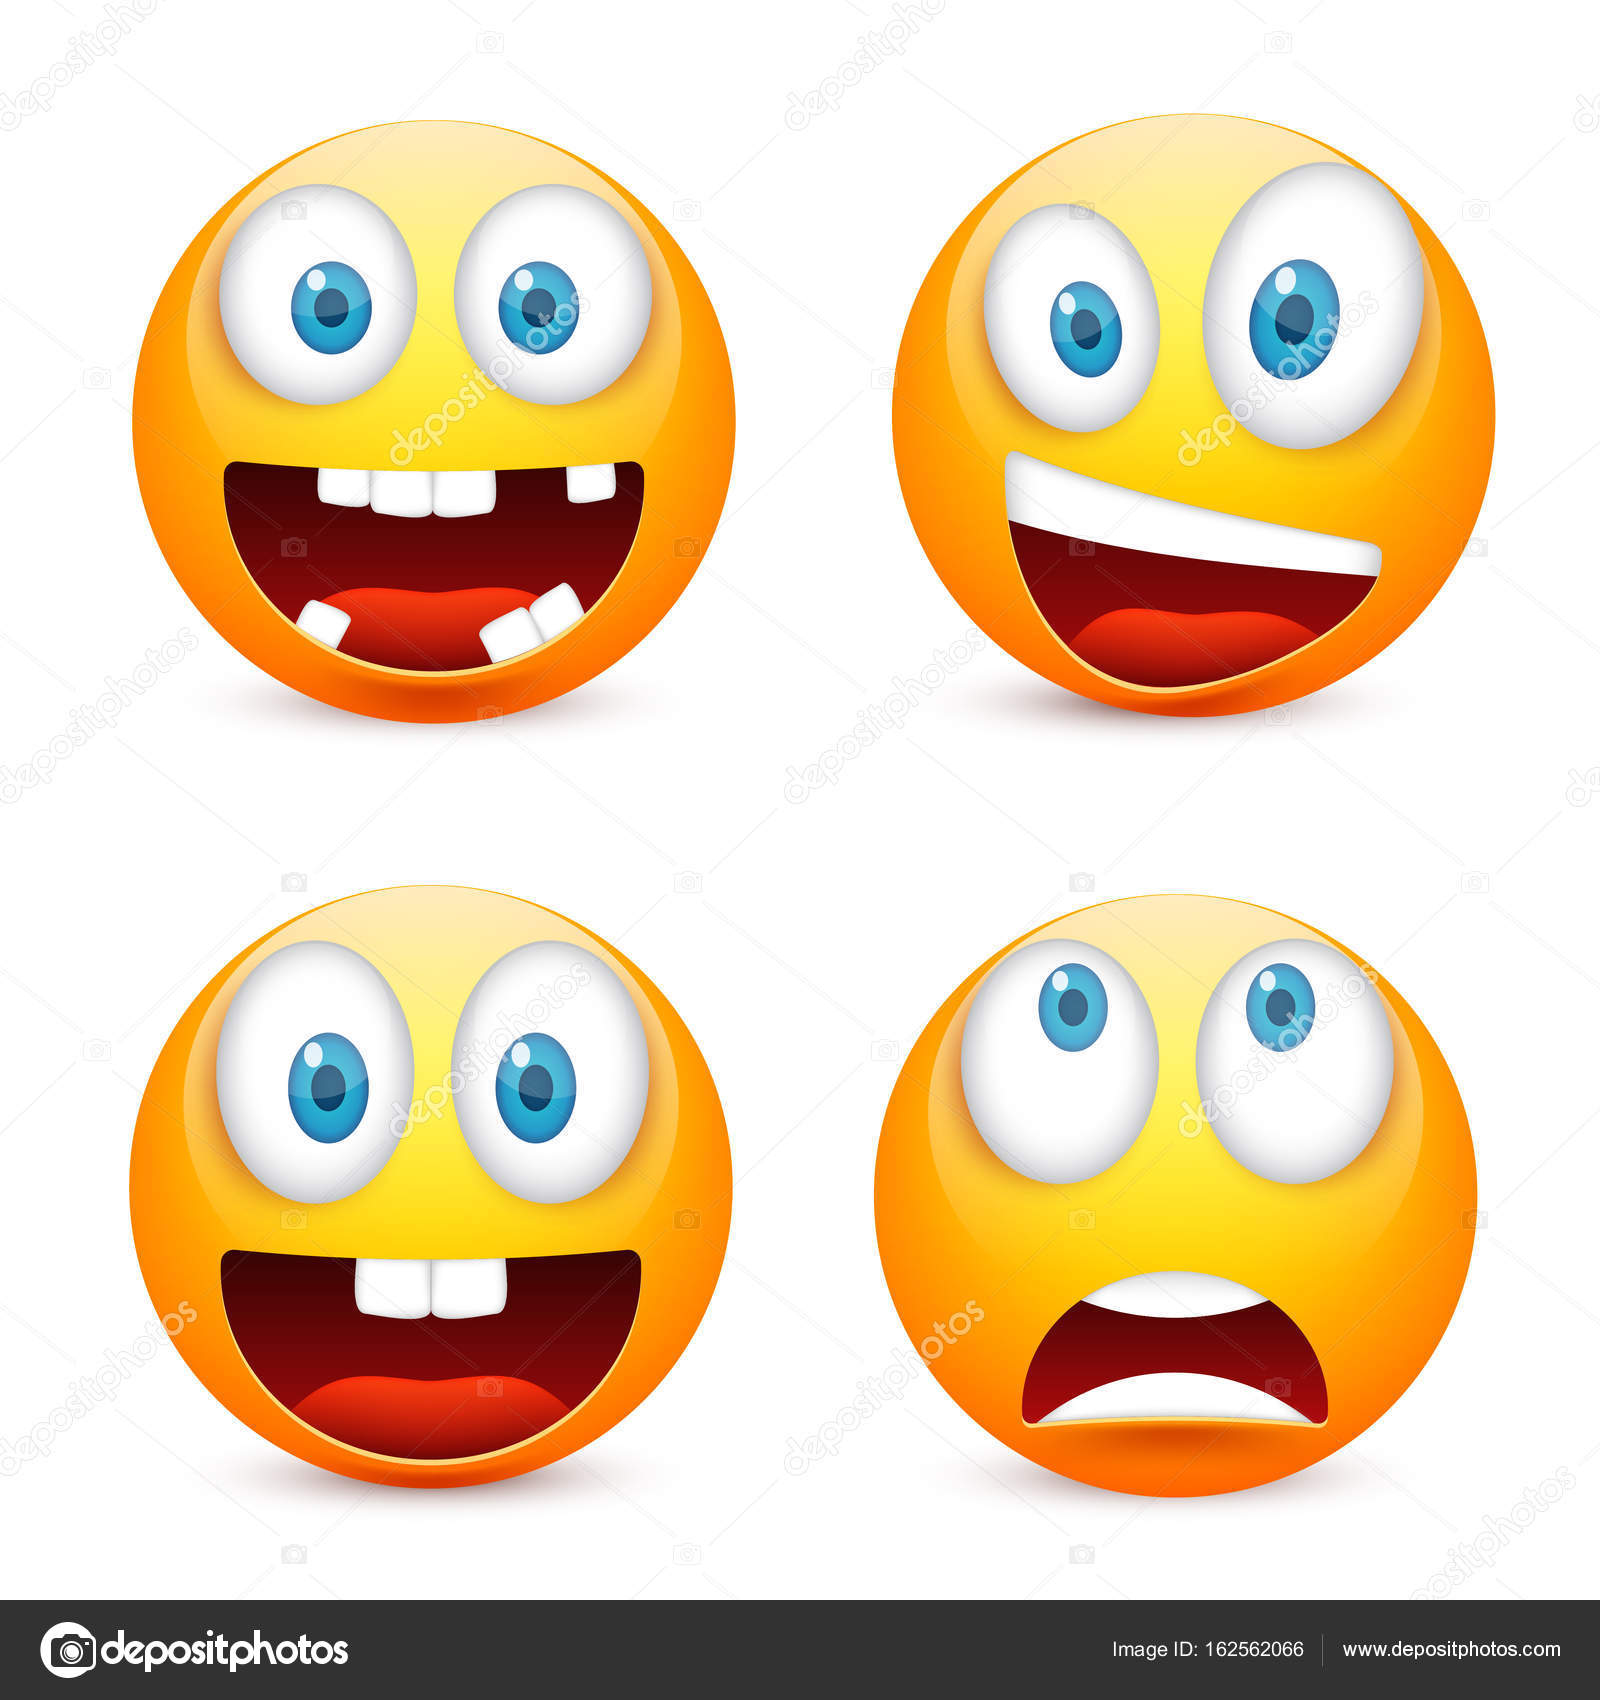 スマイリー絵文字セット青い目を持つ 感情と黄色の顔 顔の表情 3 D のリアルな絵文字 悲しい 幸せ 怒っている顔 面白い漫画のキャラクター Mood Vector イラスト ストックベクター C Floral Set